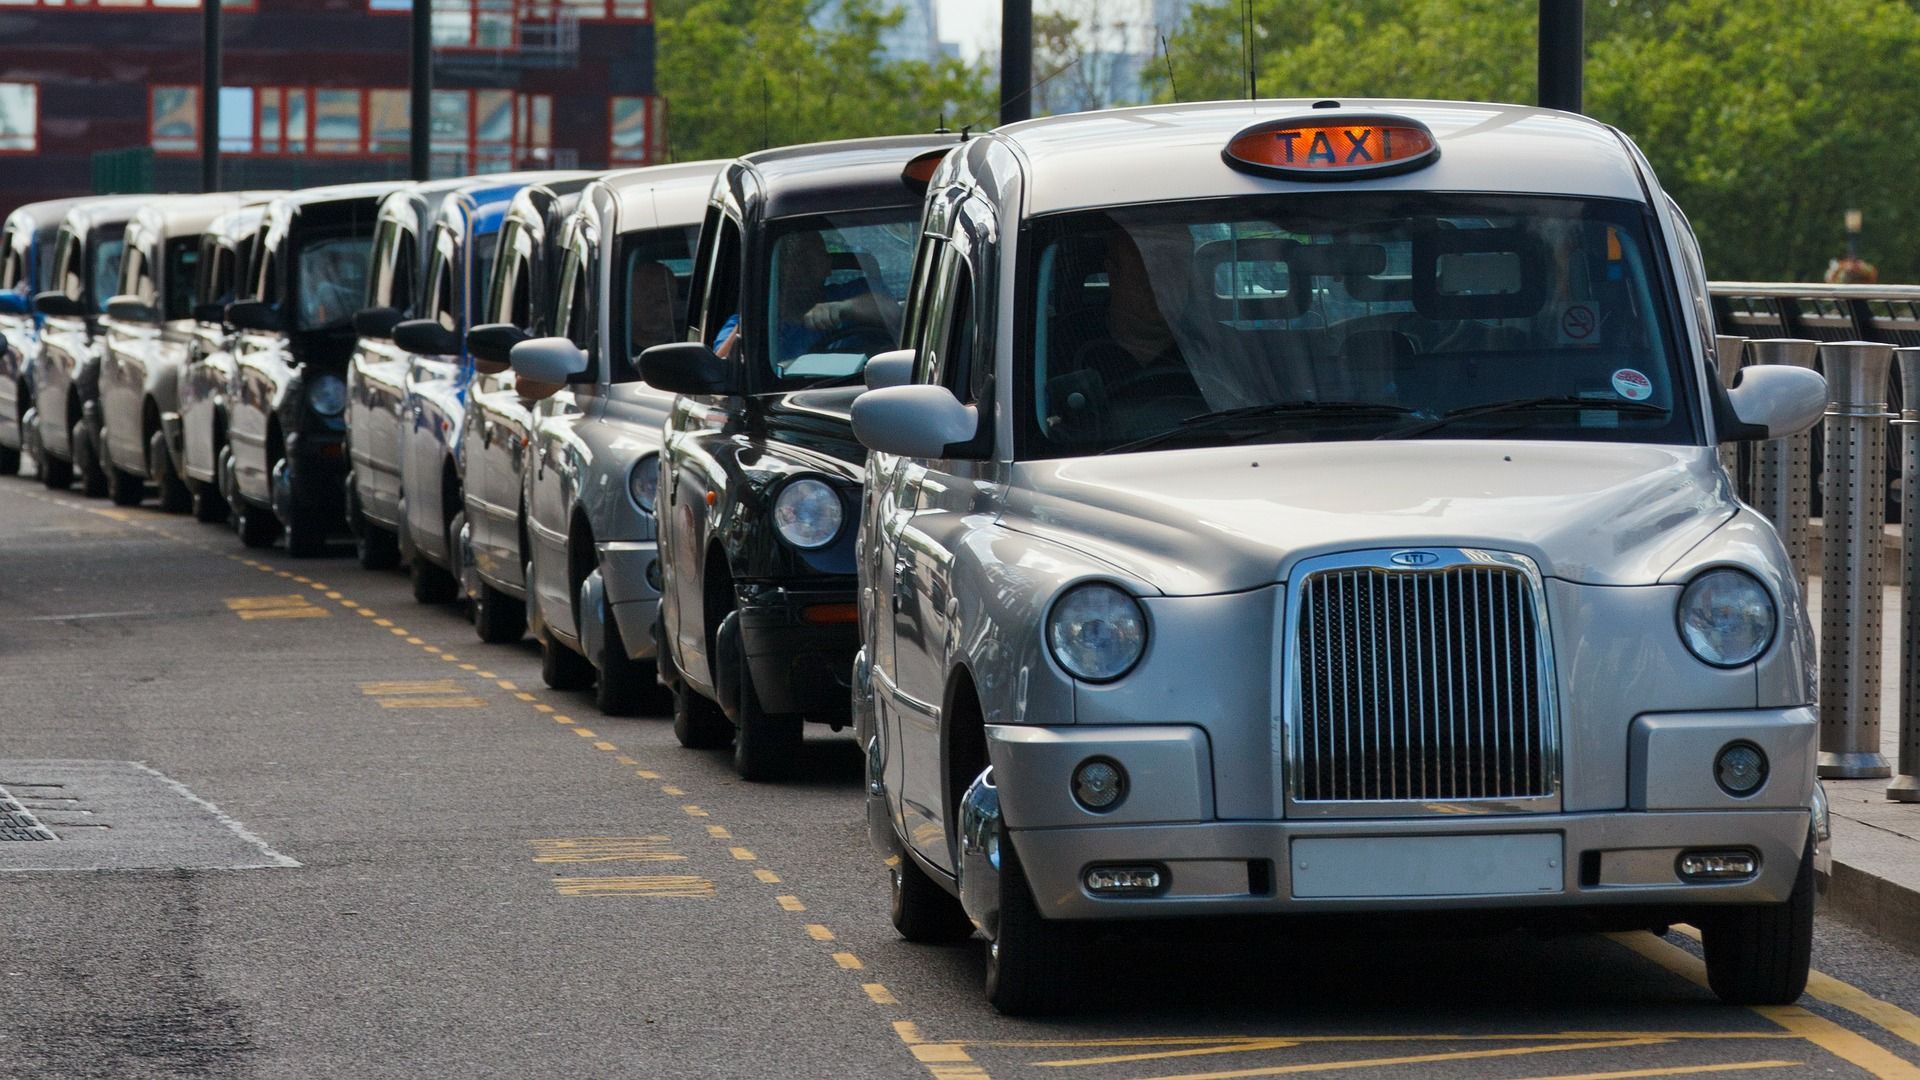  Inglaterra y Gales cuentan con 60.800 licencias de taxi mientras qie las de VTC ascienden a 210.000 licencias